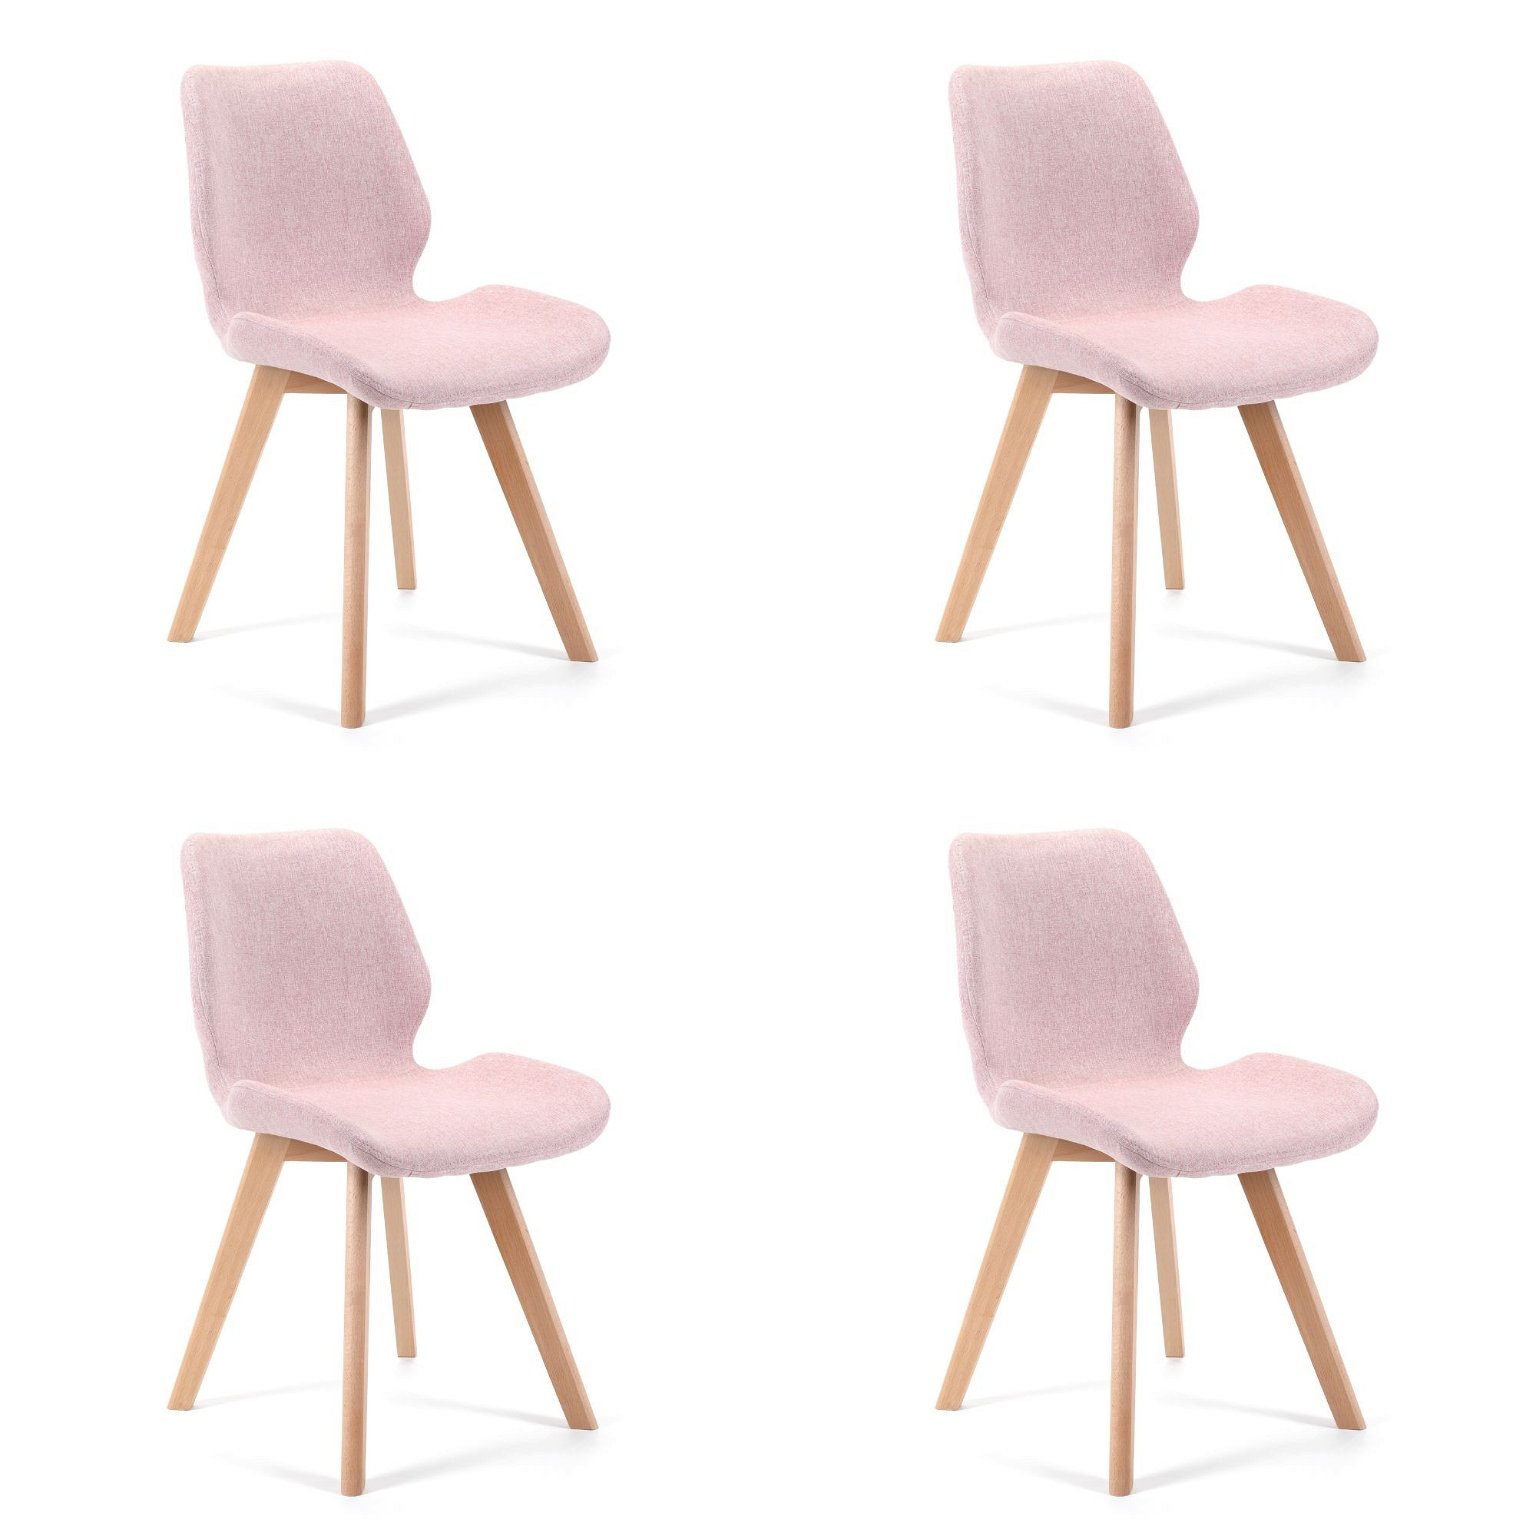 4-rių kėdžių komplektas SJ.0159, rožinis - 2